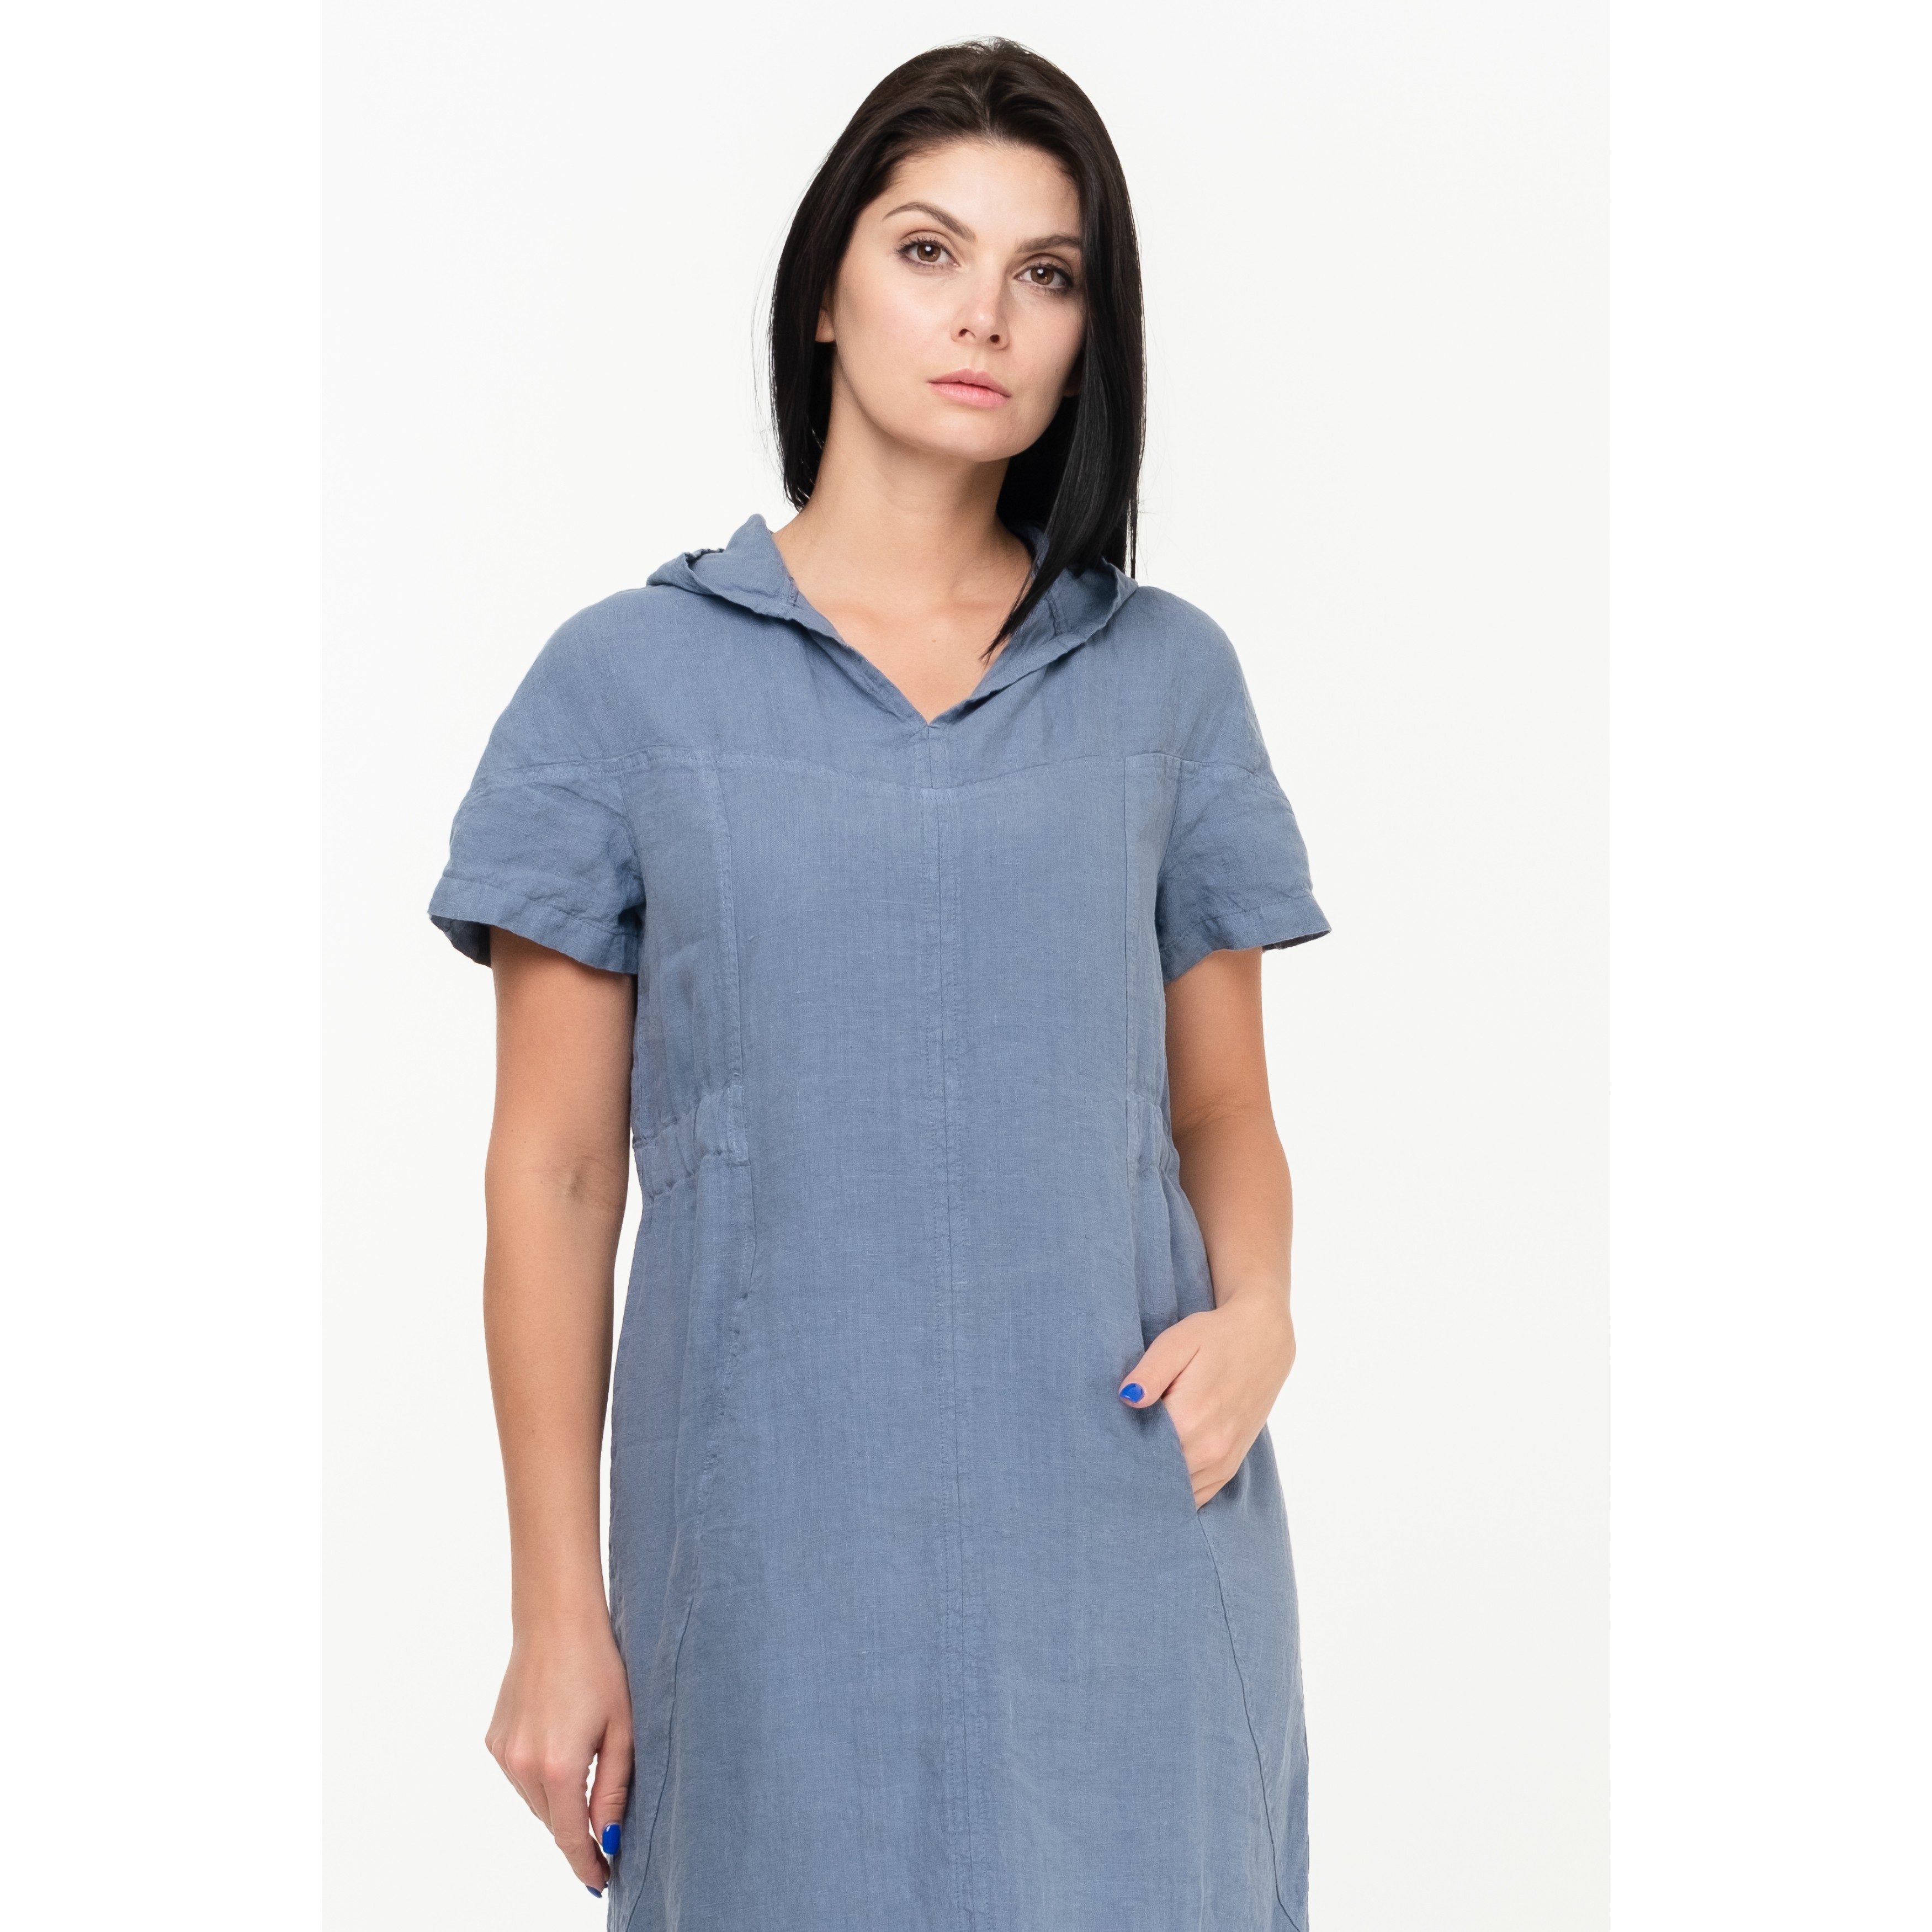 Neutral Sleeveless Linen Shirt Dress, Womens Dresses